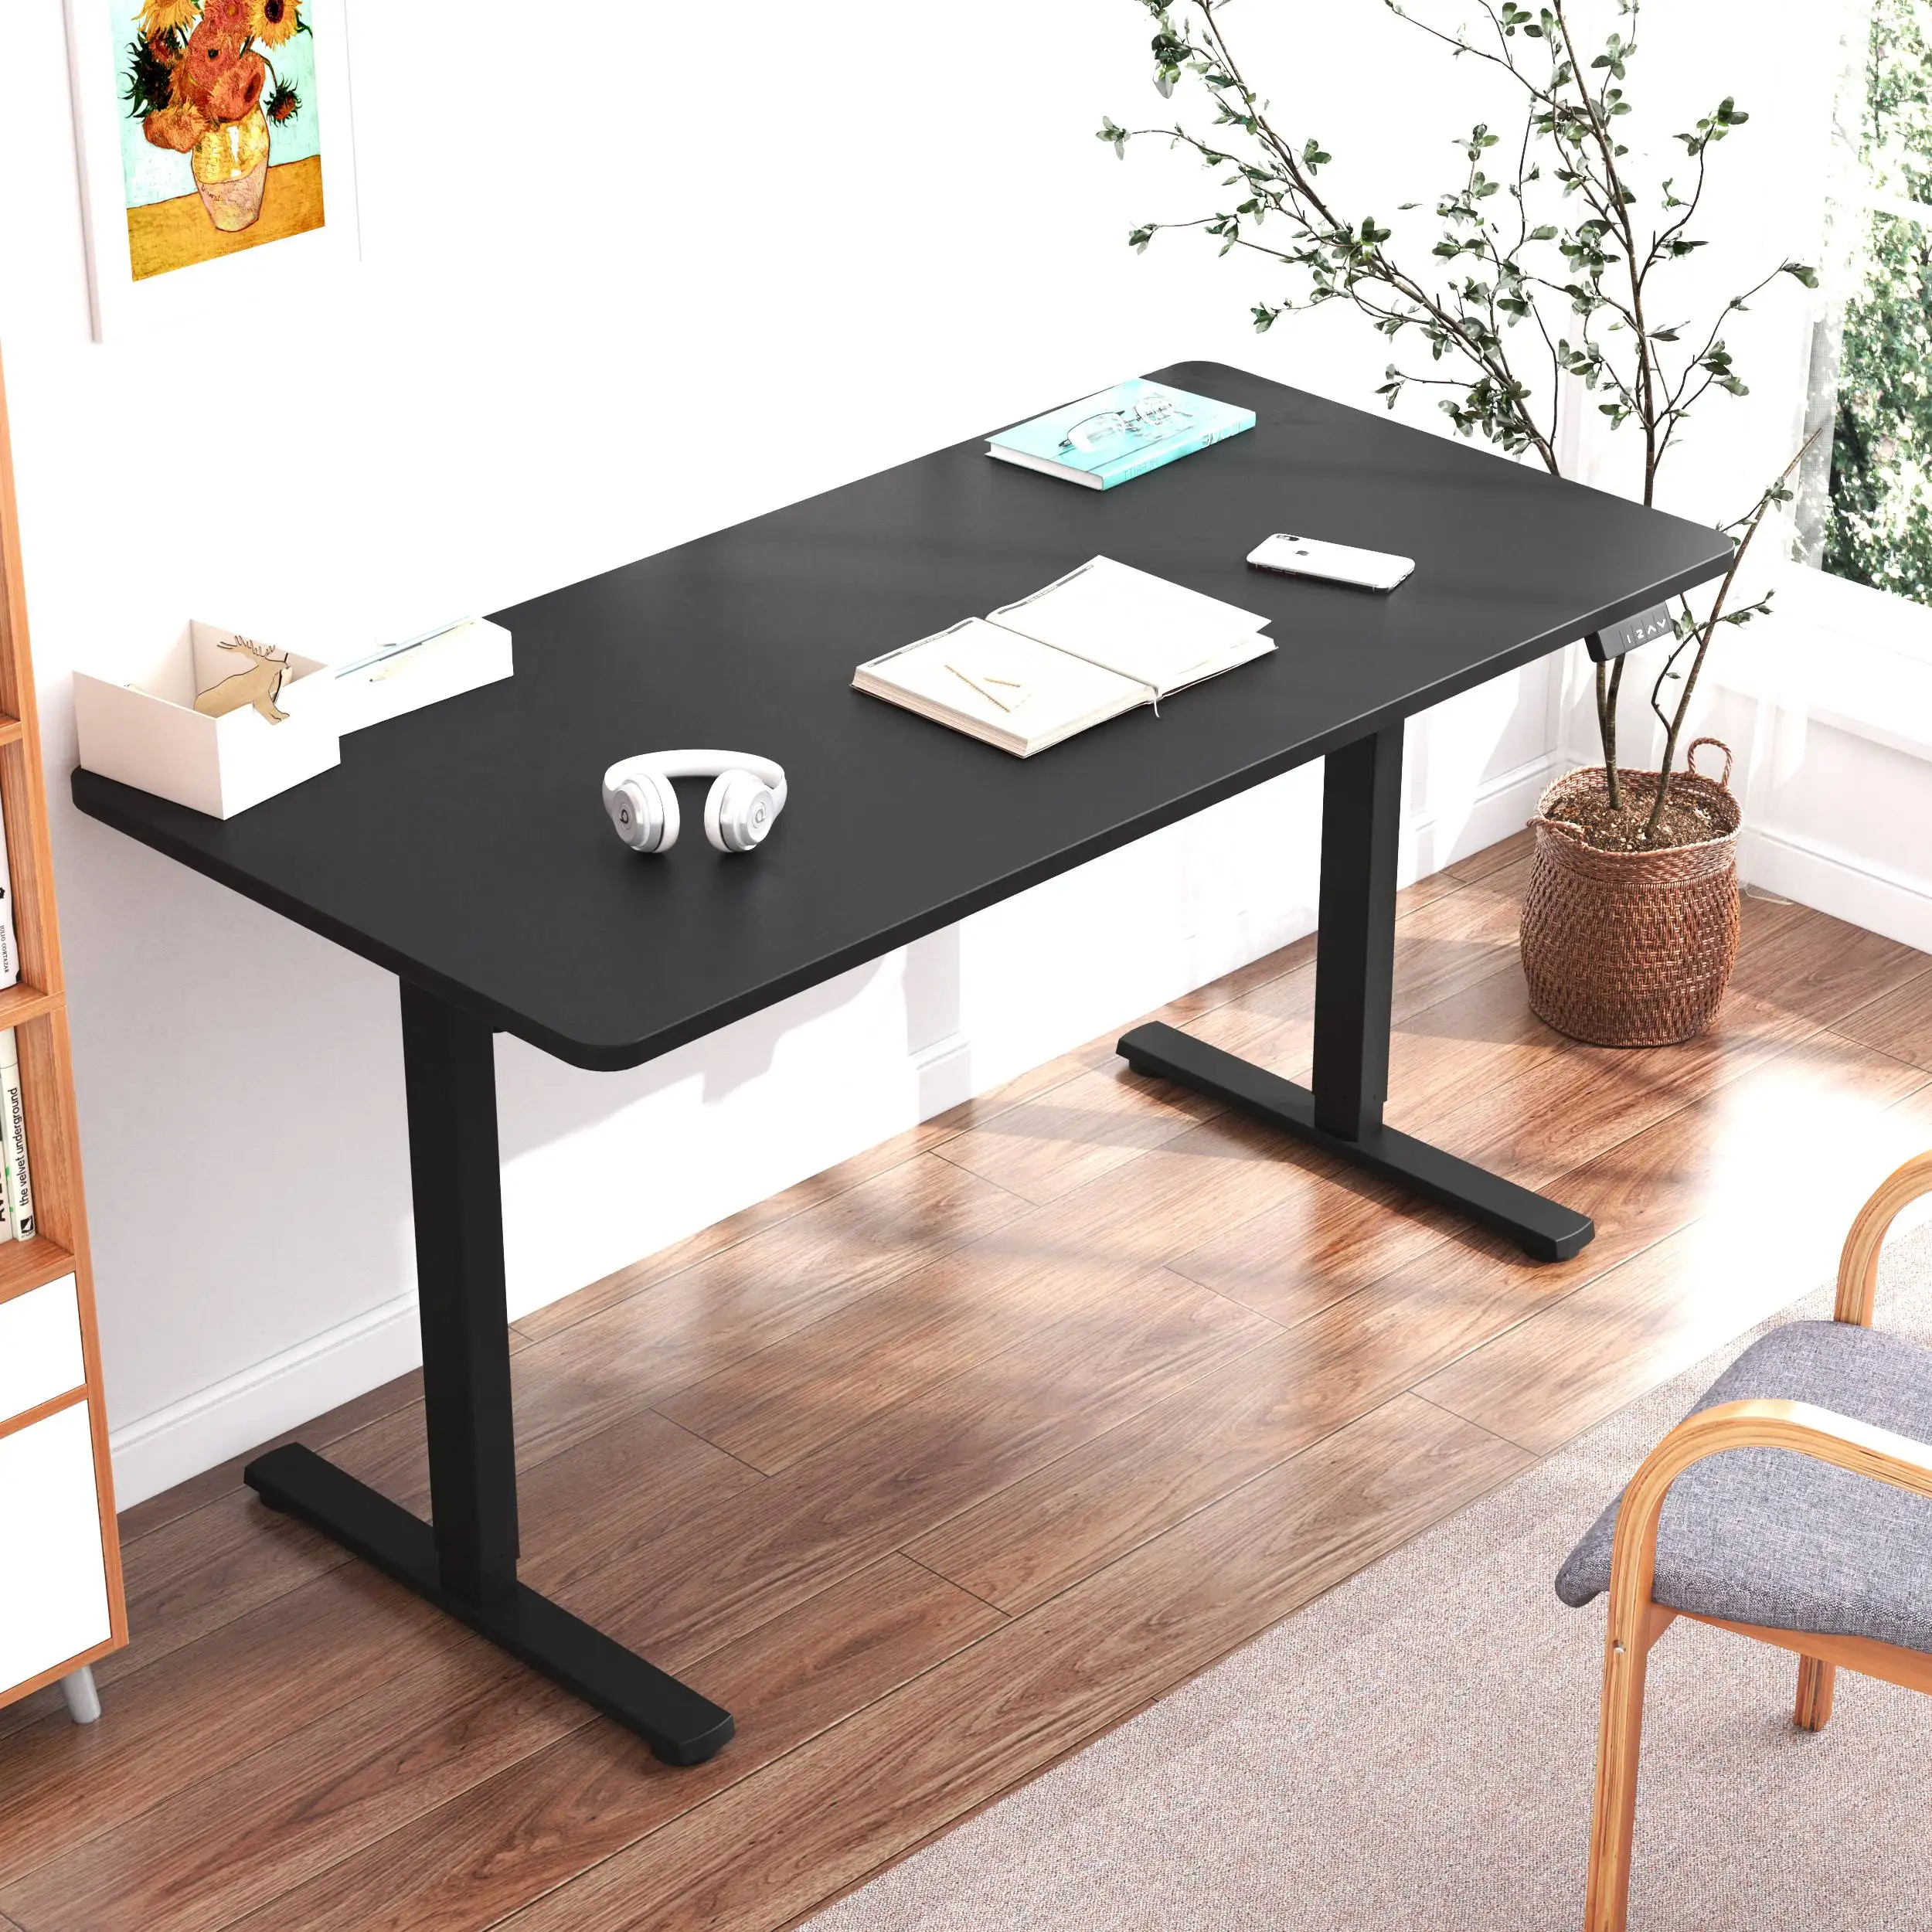 Motor tunggal, Motor tunggal 2 tahap kaki meja listrik tinggi dapat disesuaikan berdiri meja untuk kantor dan rumah